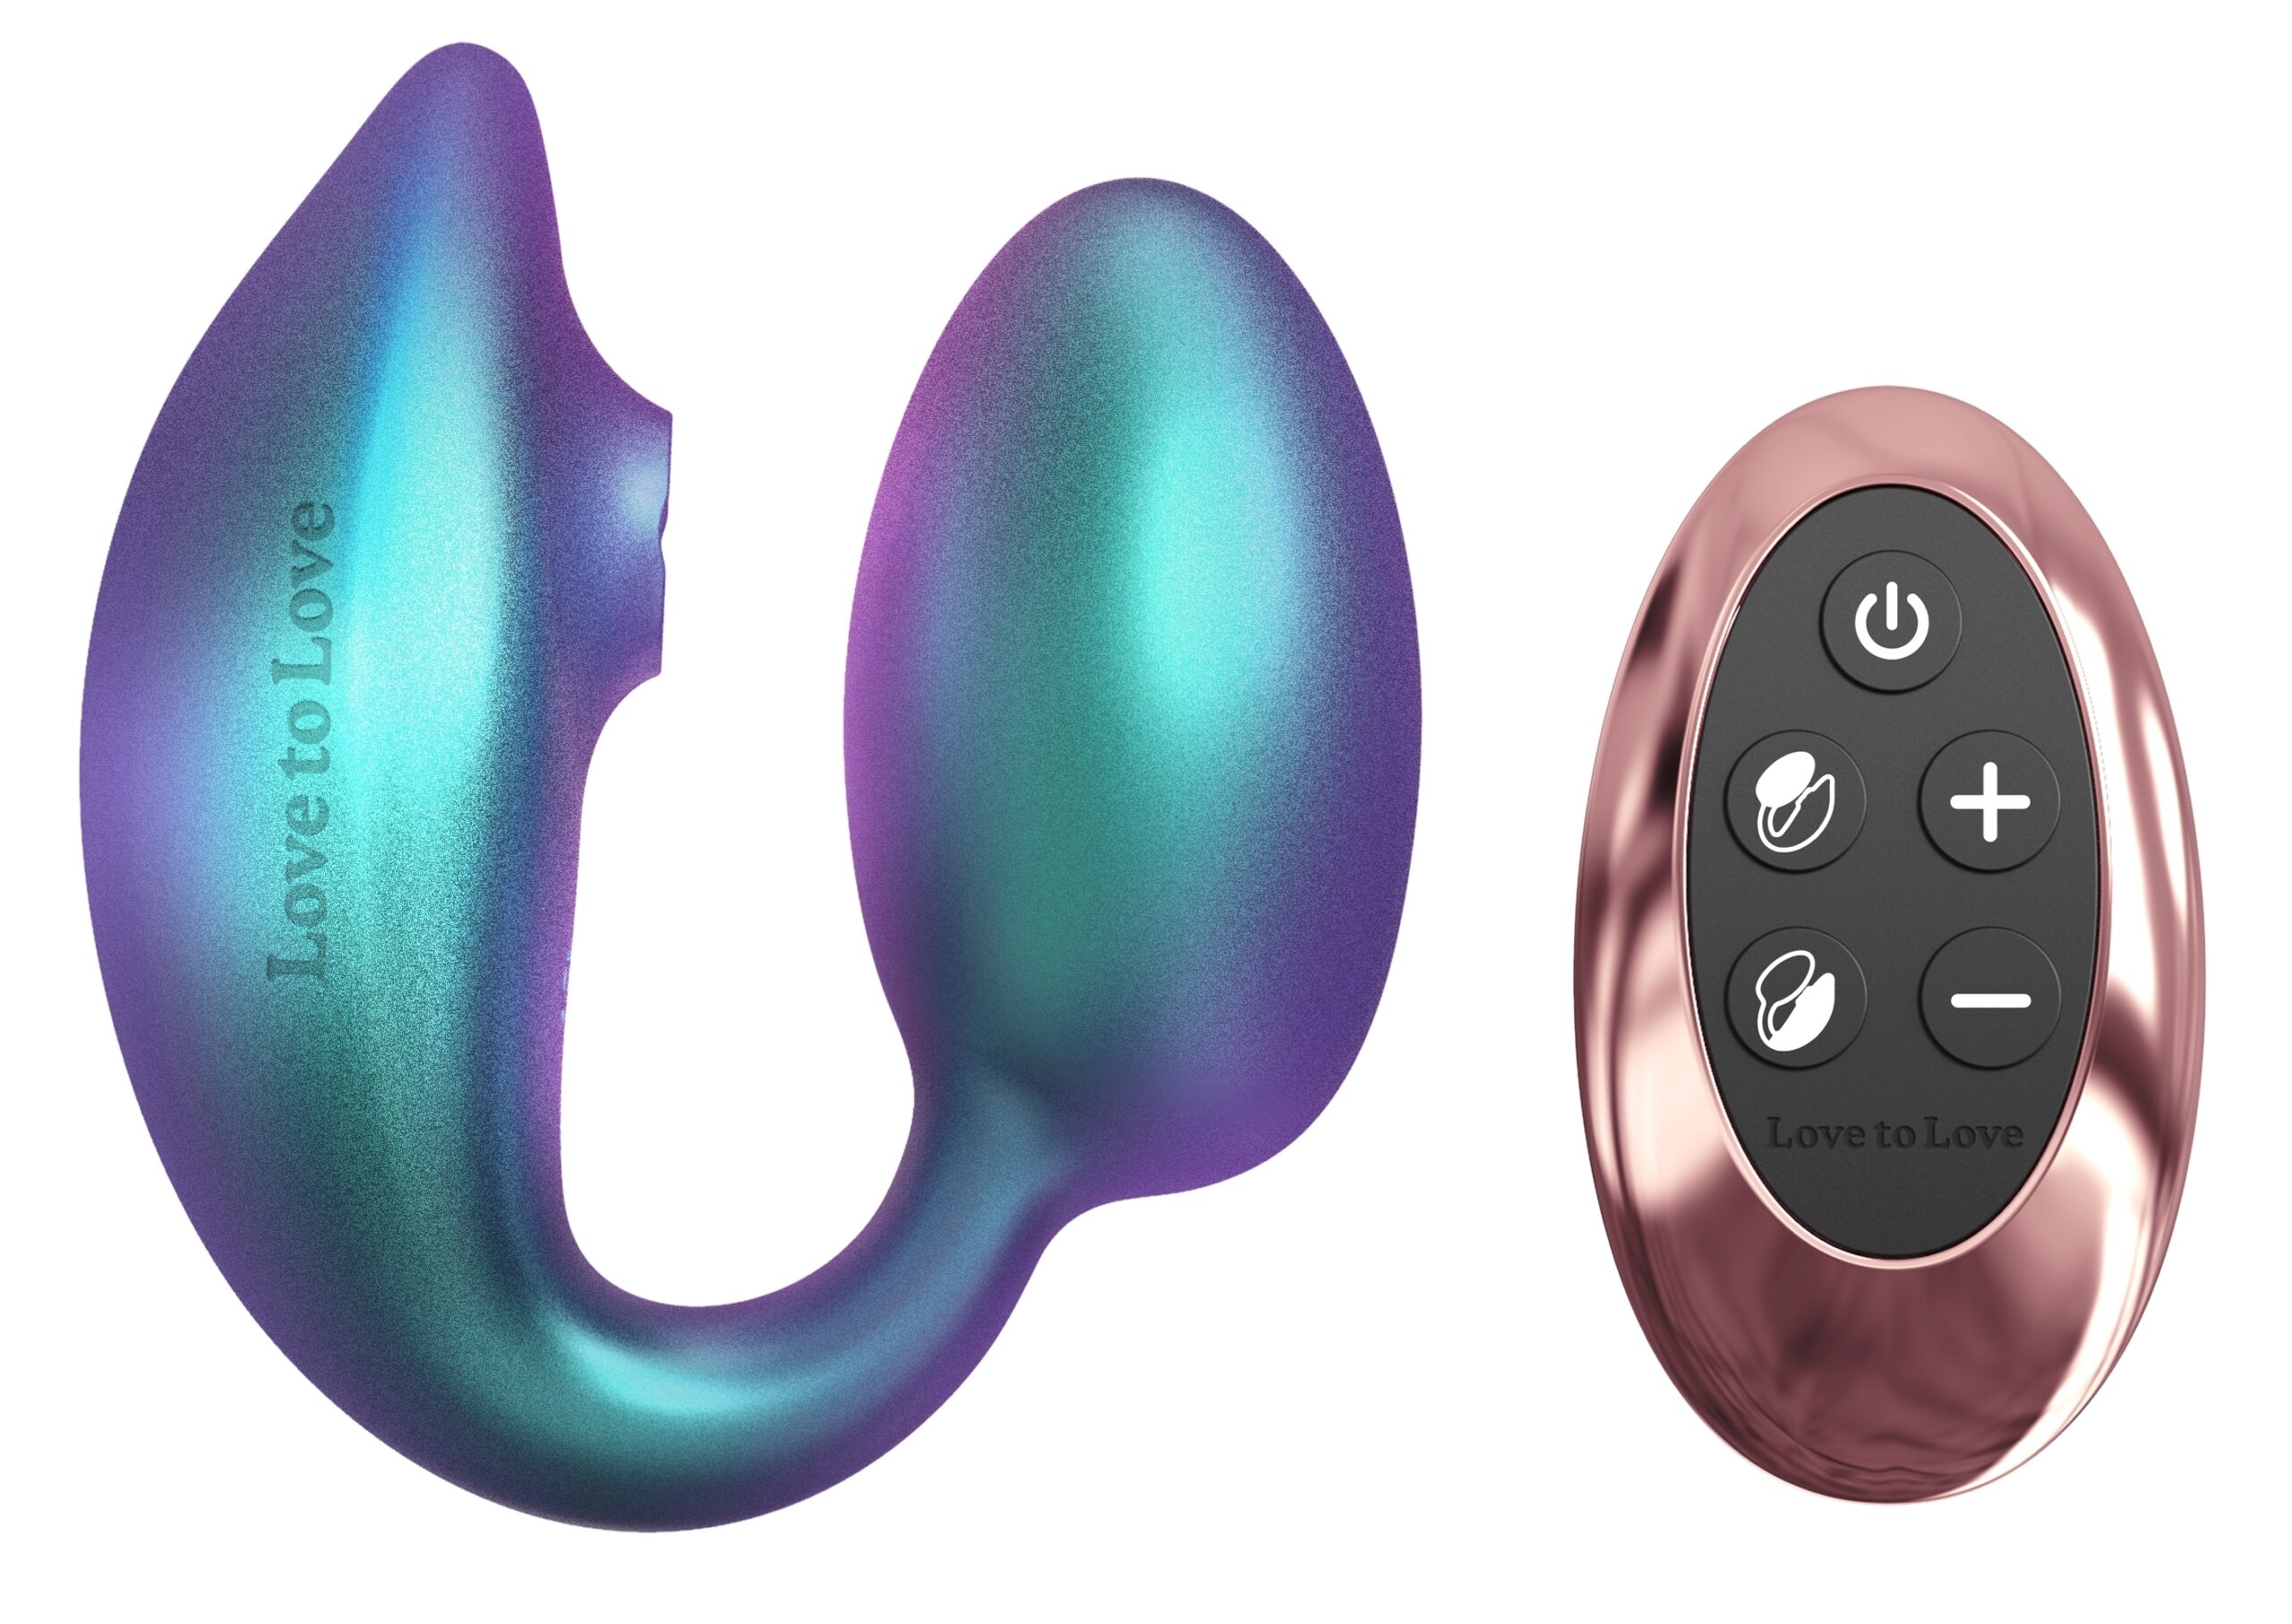 Le stimulateur Wonderlover conçu avec un oeuf vibrant stimulant le point G.Le stimulateur de clitoris effet succion